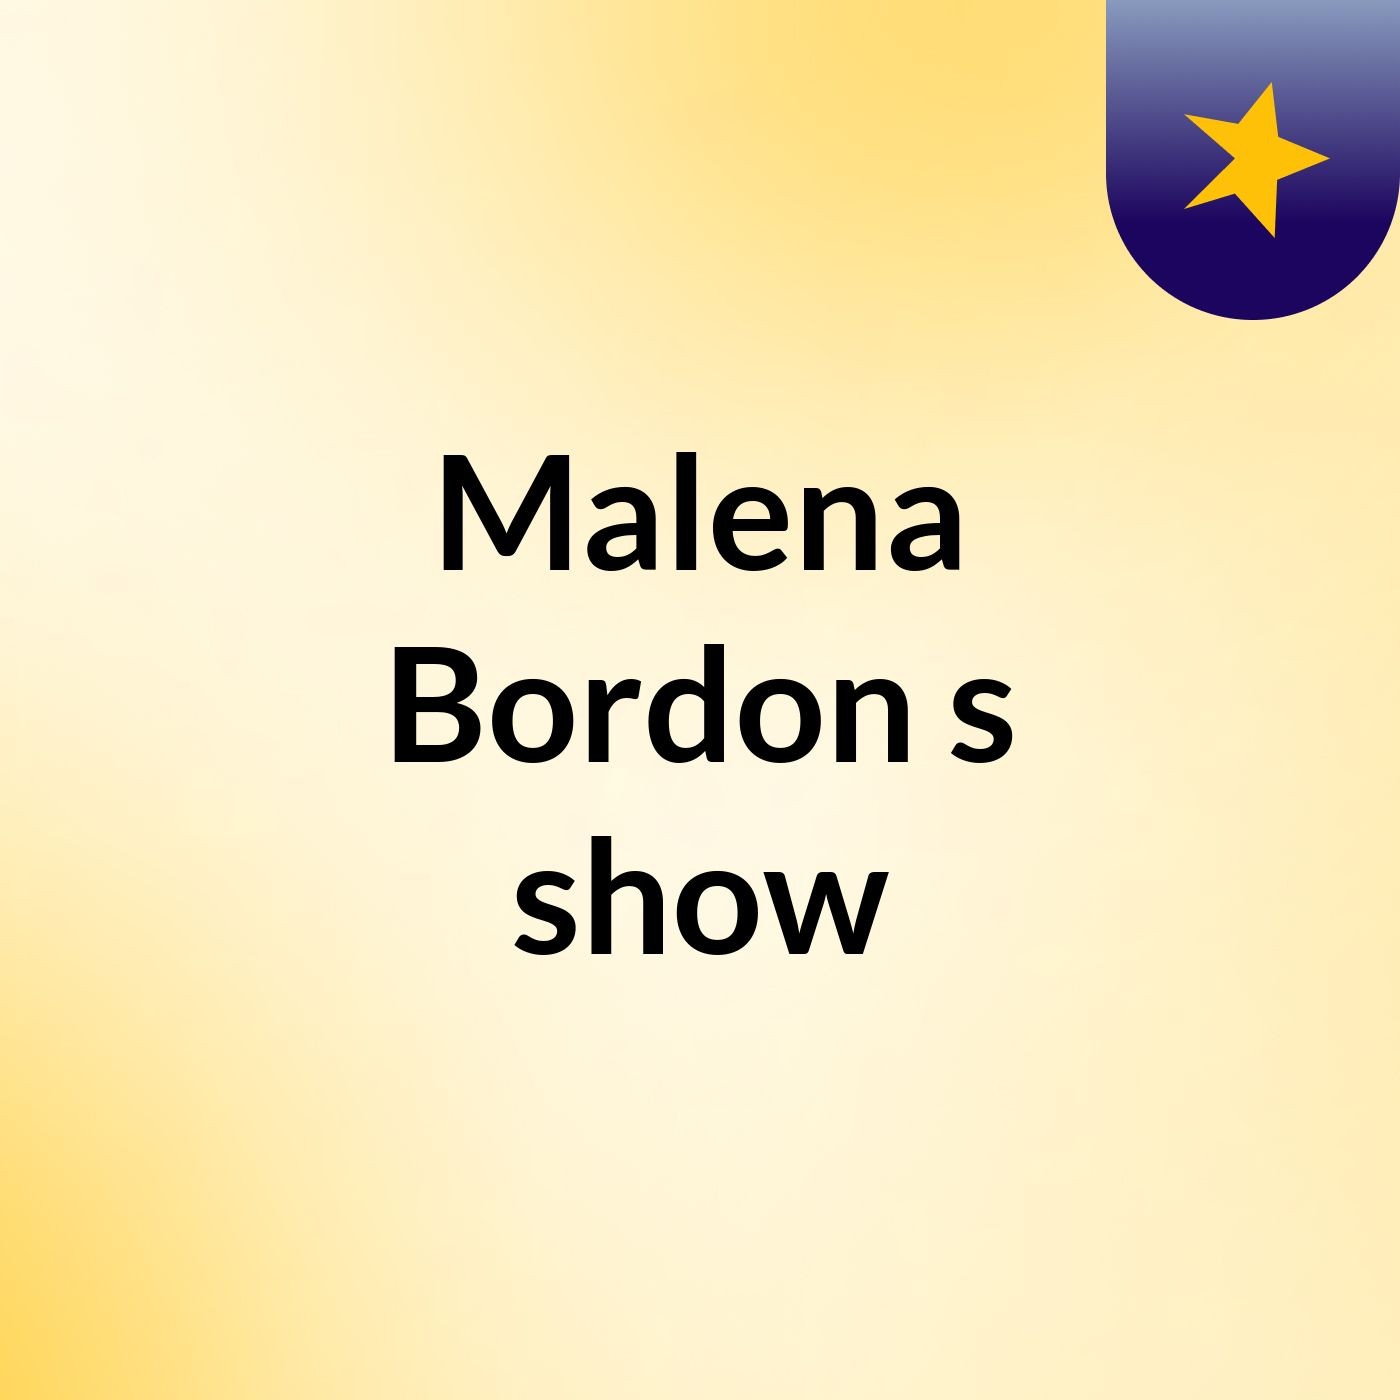 Malena Bordon's show